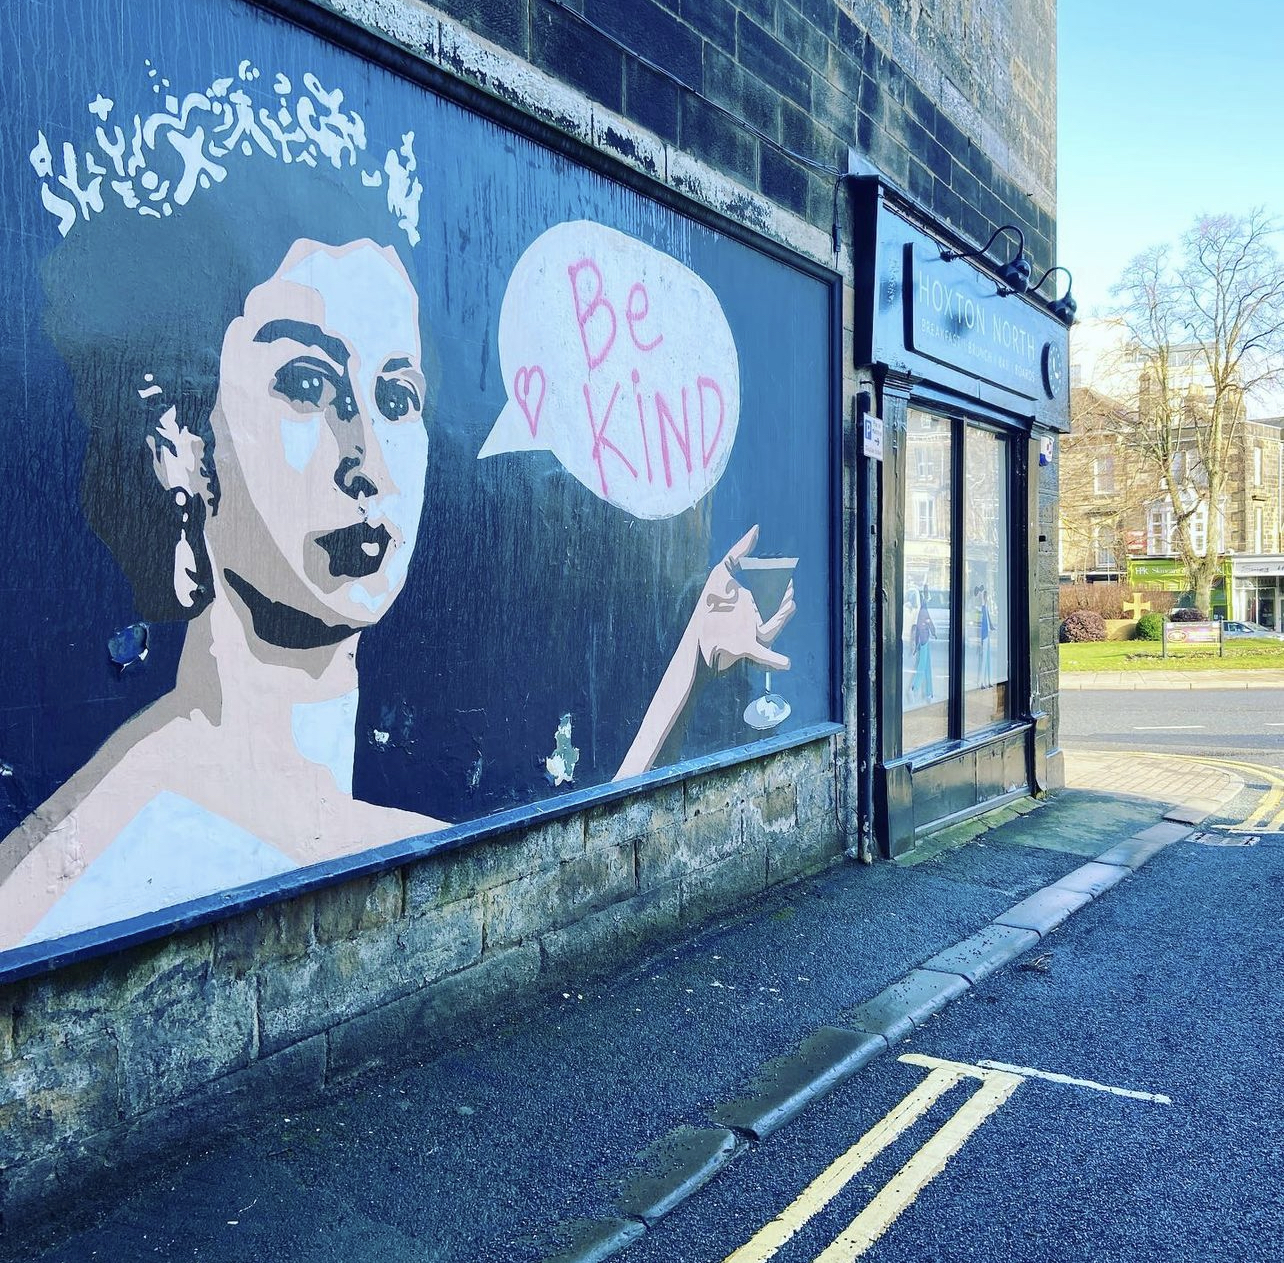 Queen Elizabeth II street art in harrogate. Be Kind